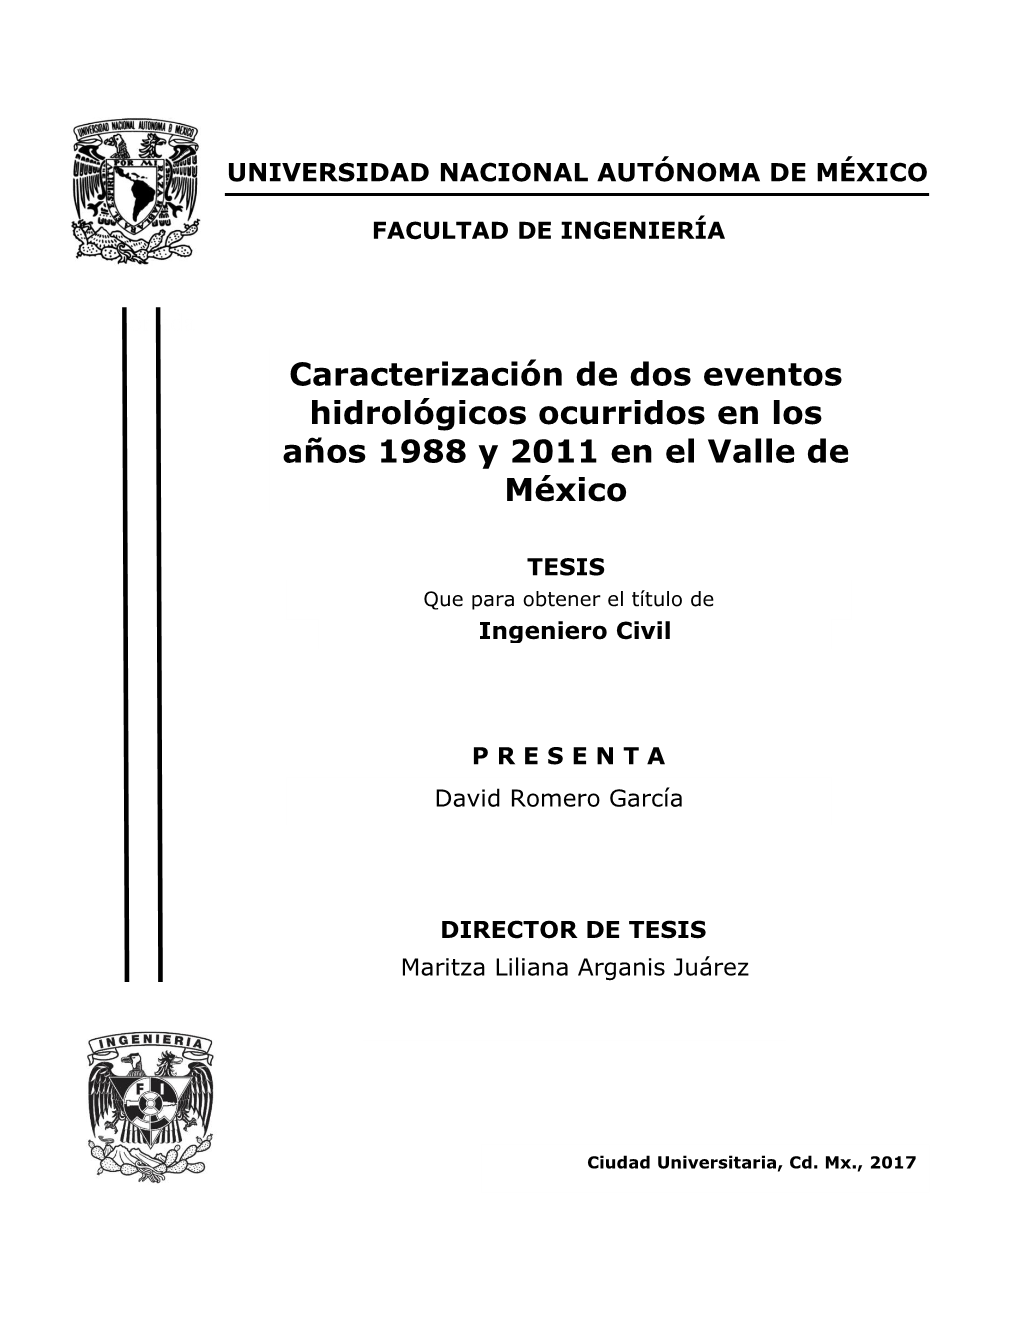 Caracterización De Dos Eventos Hidrológicos Ocurridos En Los Años 1988 Y 2011 En El Valle De México